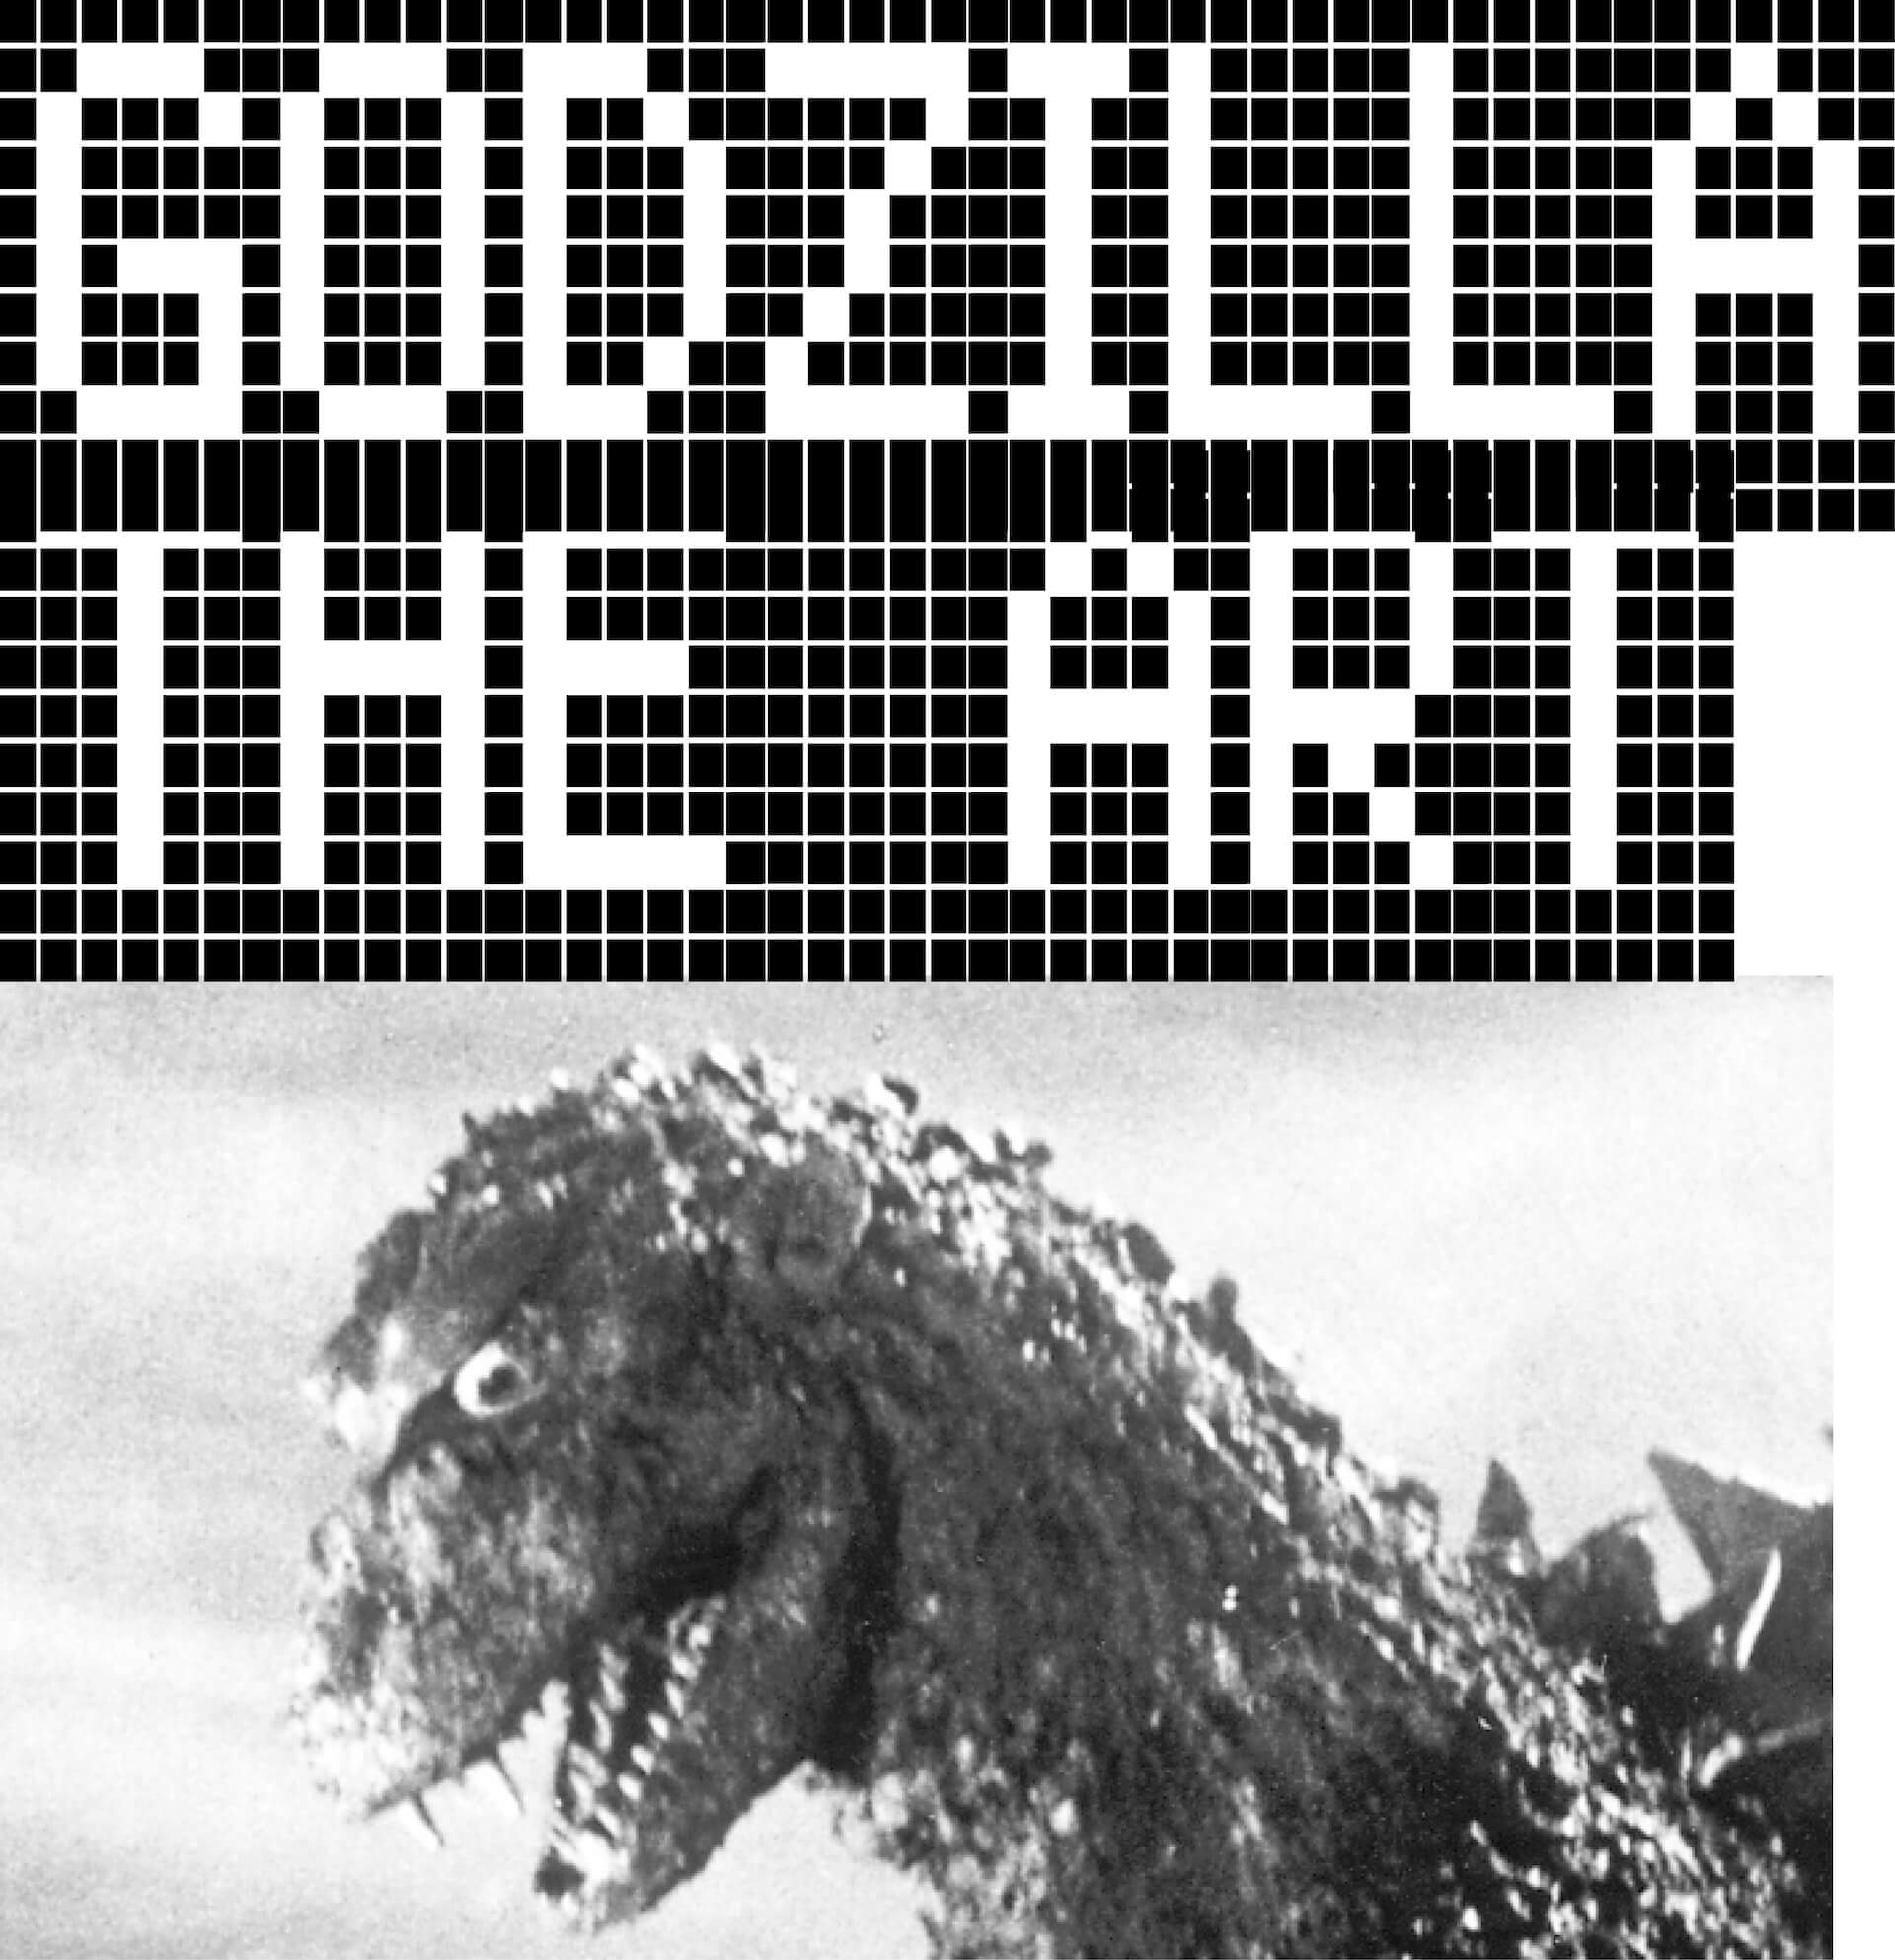 ゴジラ生誕70周年に向けたアートプロジェクト「GODZILLA THE ART」が始動｜第一弾で我喜屋位瑳務とNOH Sanghoによるコラボ作品がGALLERY X BY PARCOに登場 artculture230420-godzilla-the-art2